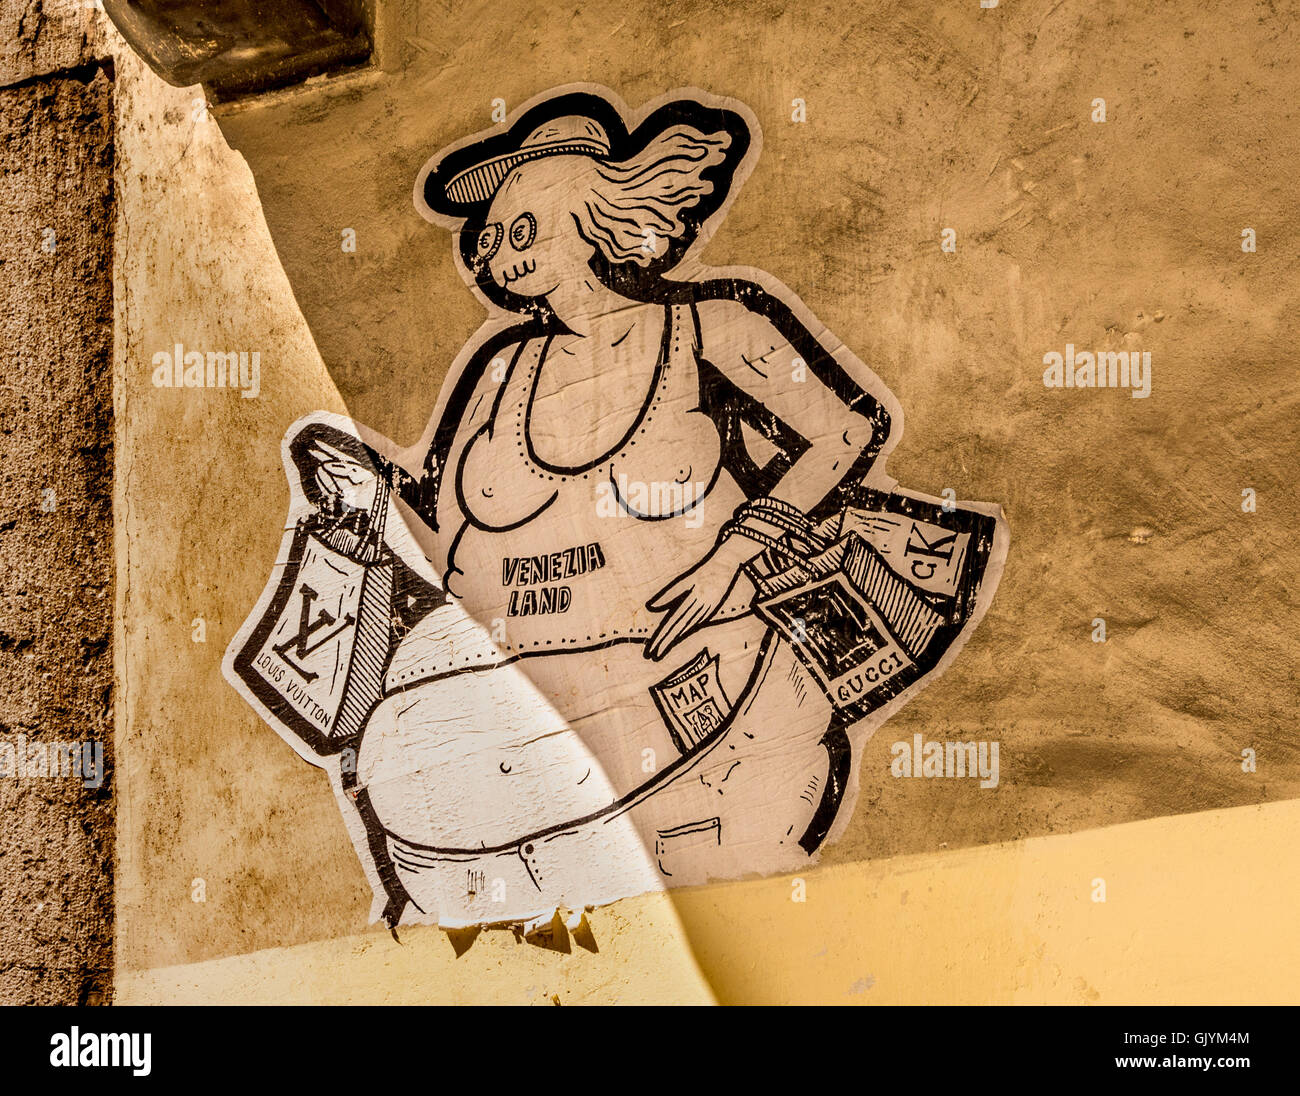 Venezia terra dall artista Guerrilla Spam. Turismo anti-graffiti, su una parete di un edificio a Venezia, Italia. Foto Stock